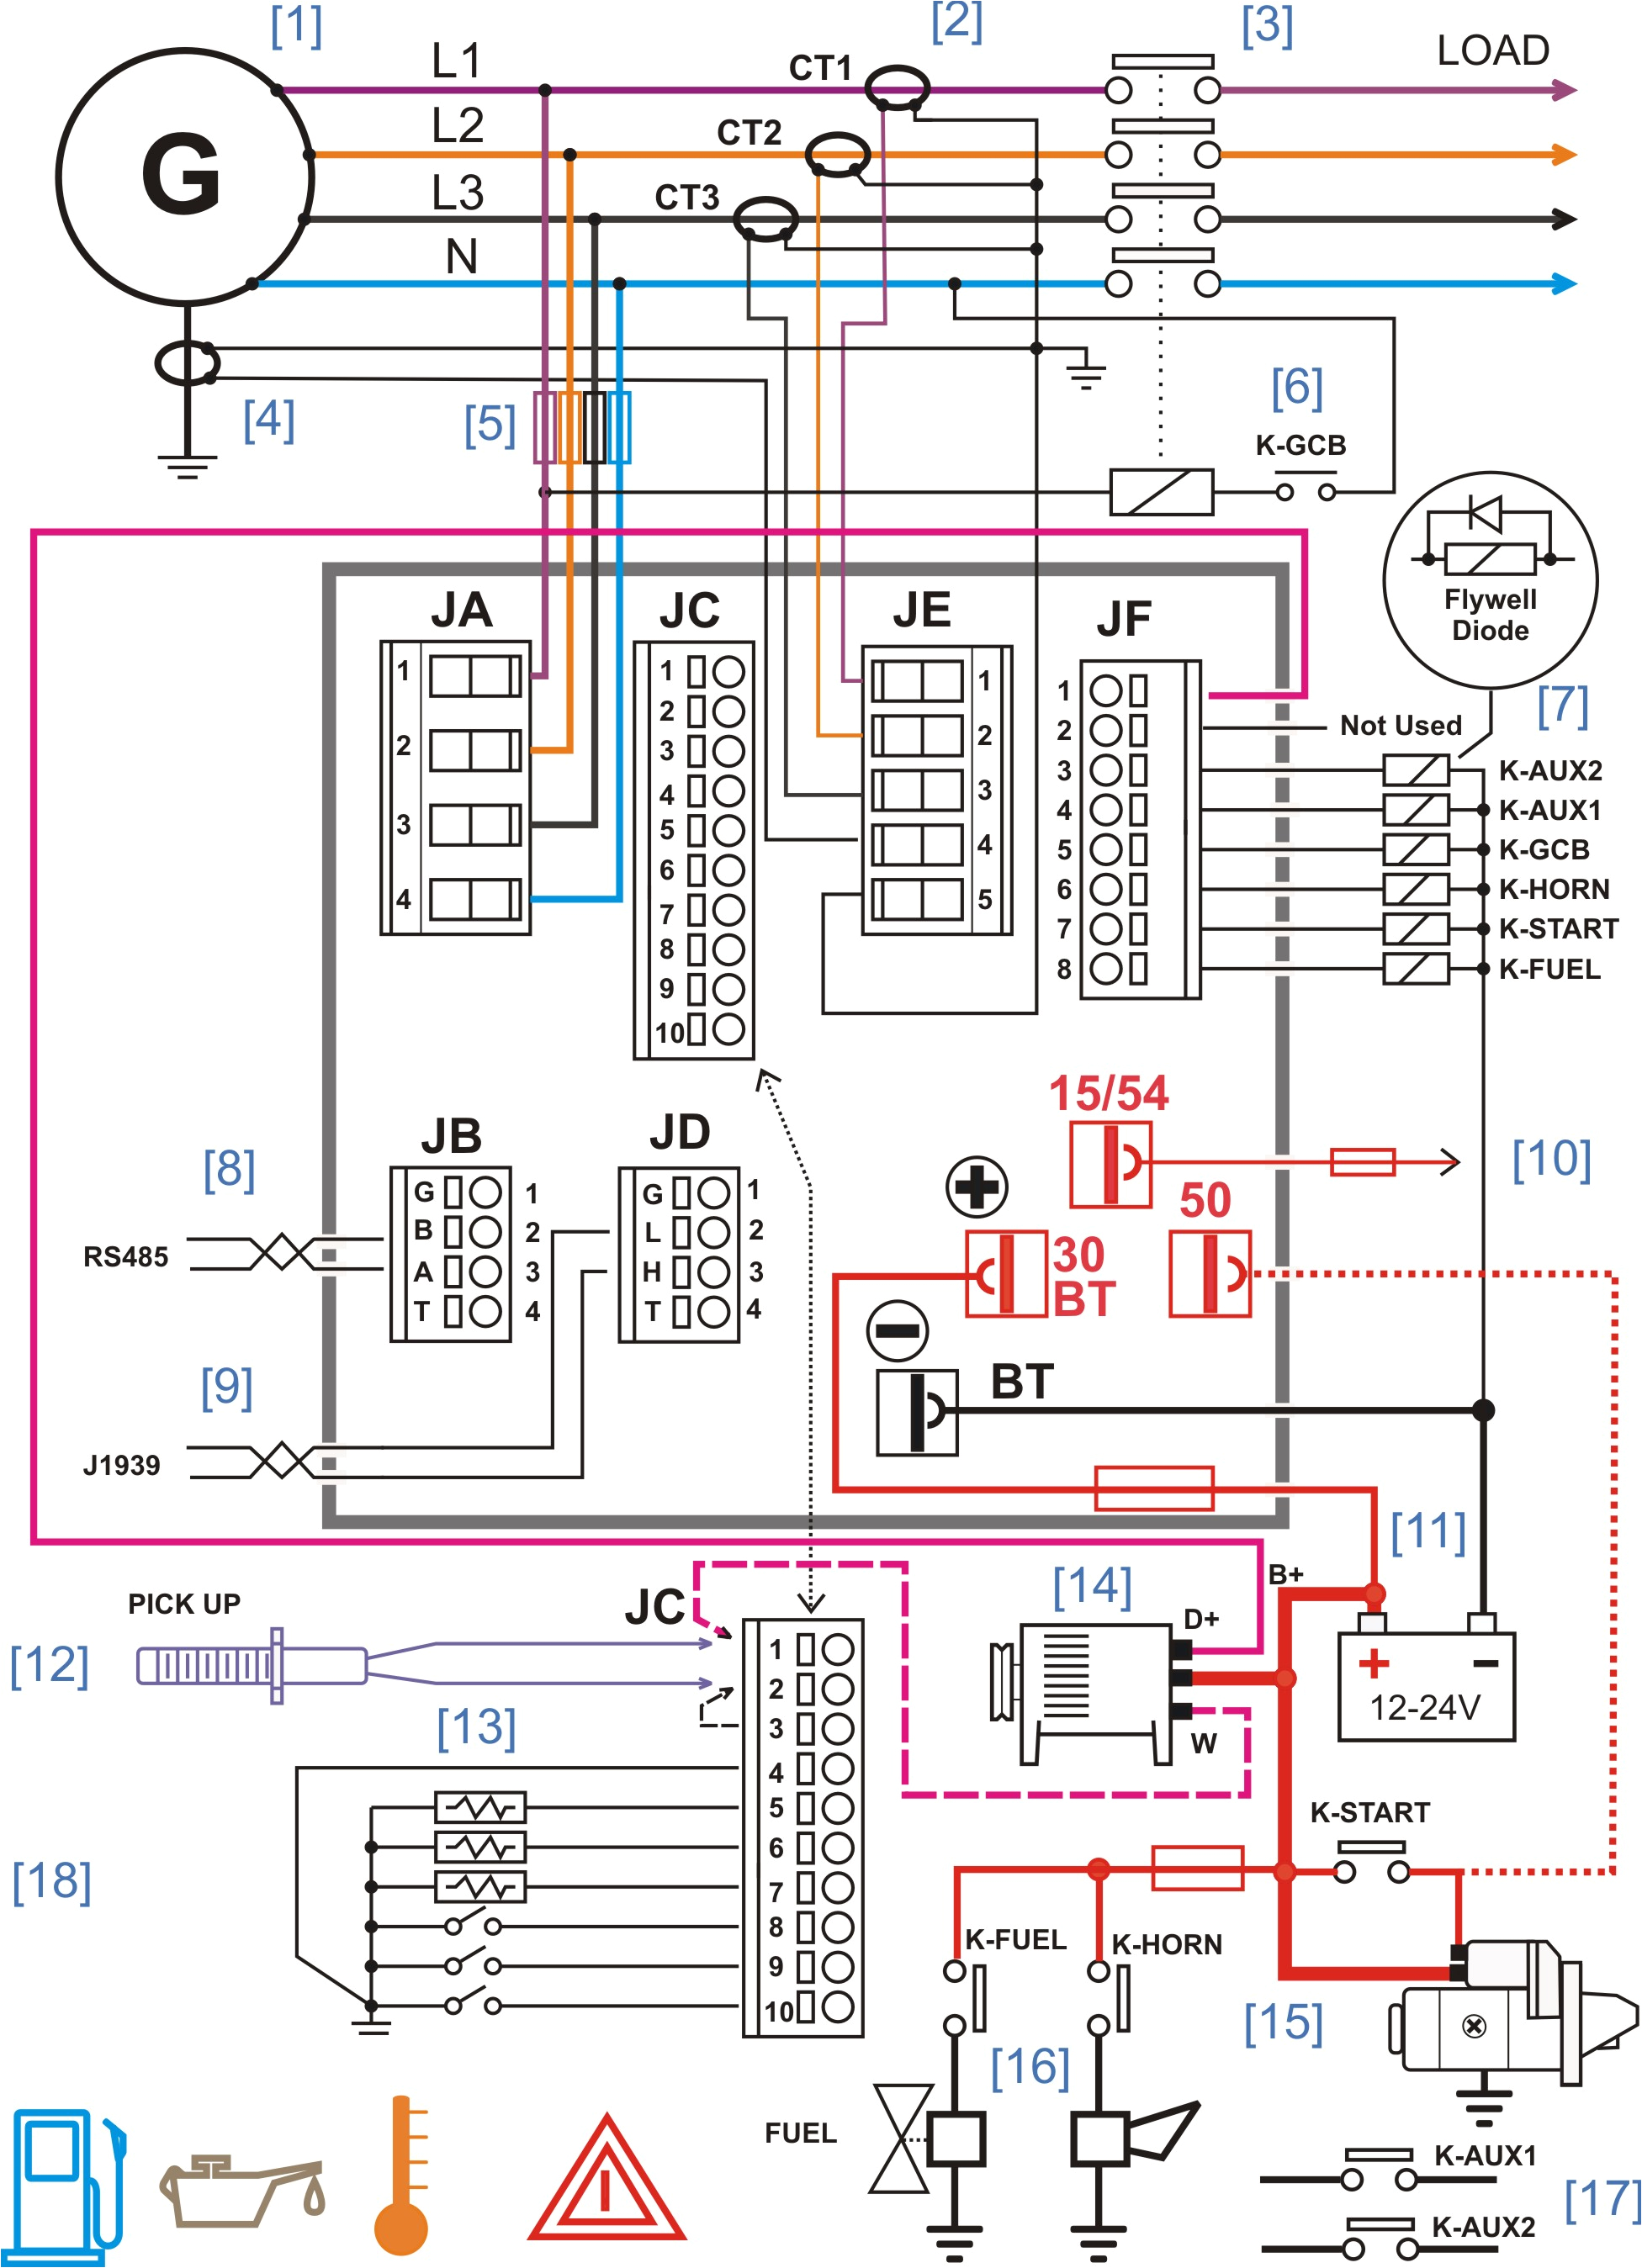 electrical wiring diagram freeware wiring diagram bloghome wiring diagram generator wiring diagram blog free electrical wiring